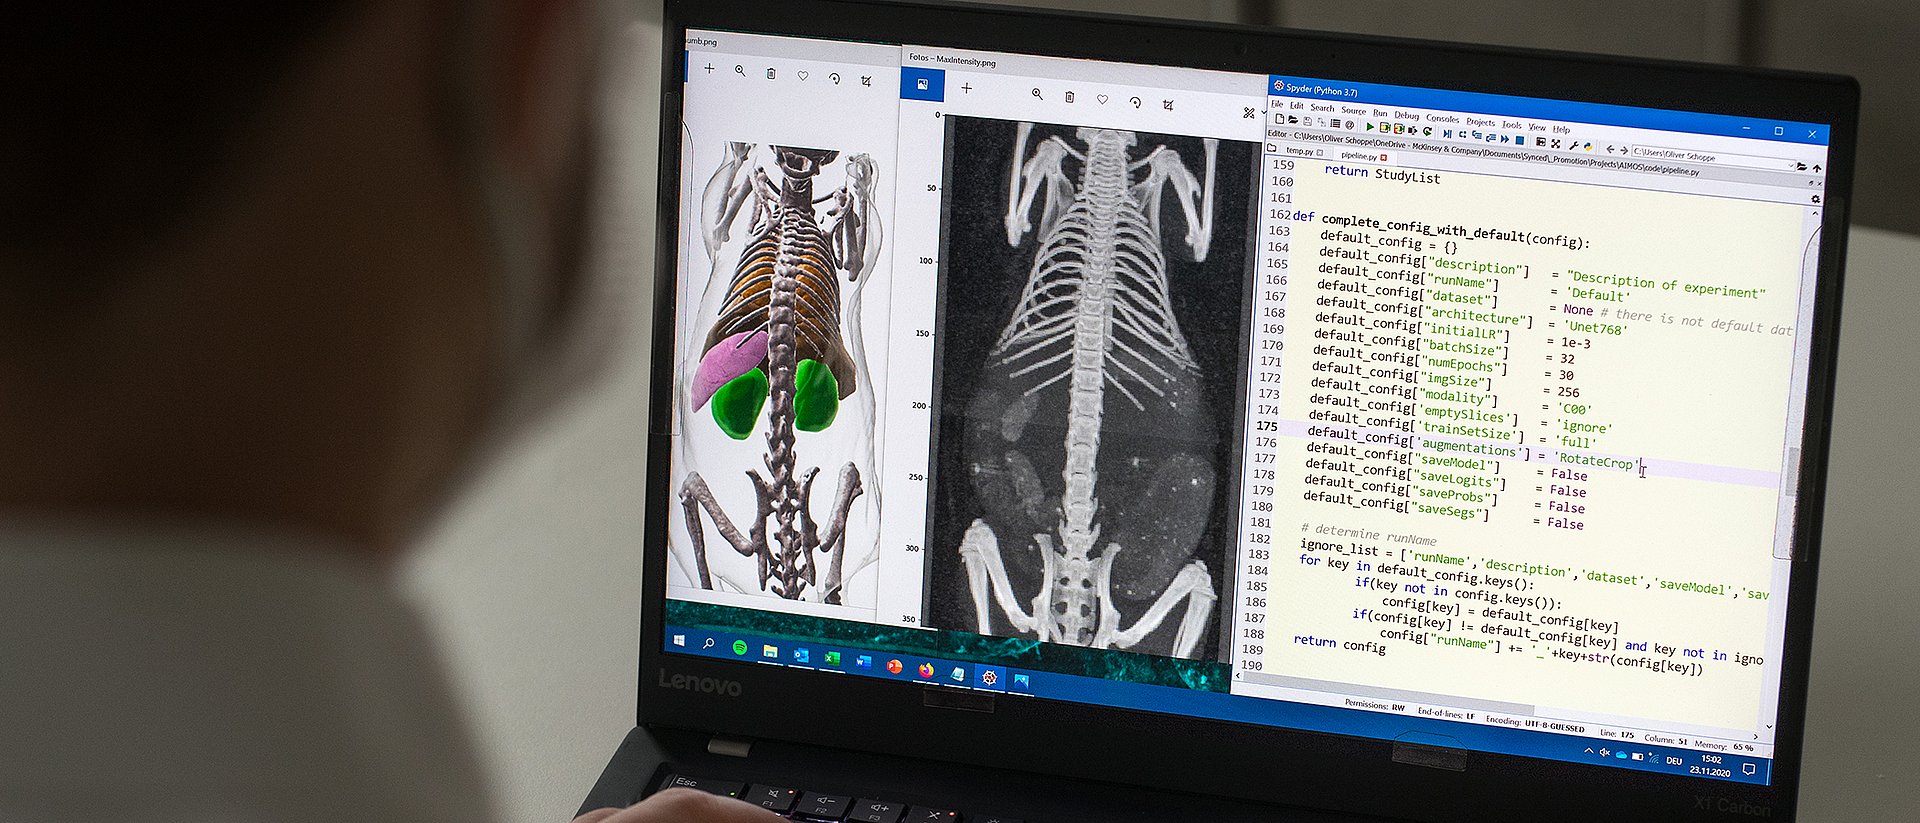 Dank künstlicher Intelligenz ist die AIMOS-Software in der Lage, auf dreidimensionalen Graustufenbildern Knochen und Organe zu segmentieren, was die anschließende Auswertung erheblich erleichtert.